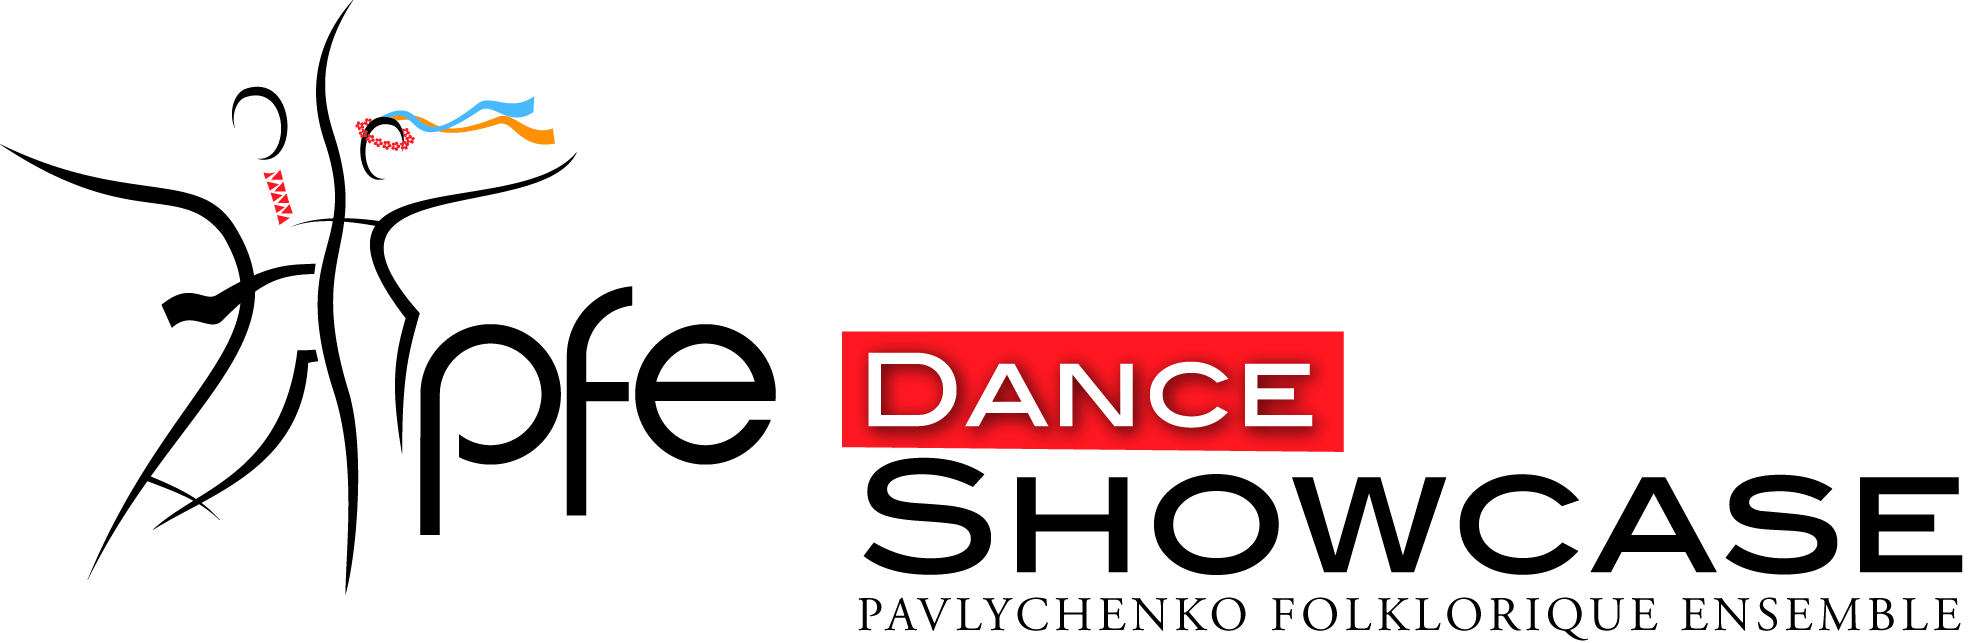 PFE Dance Showcase logo